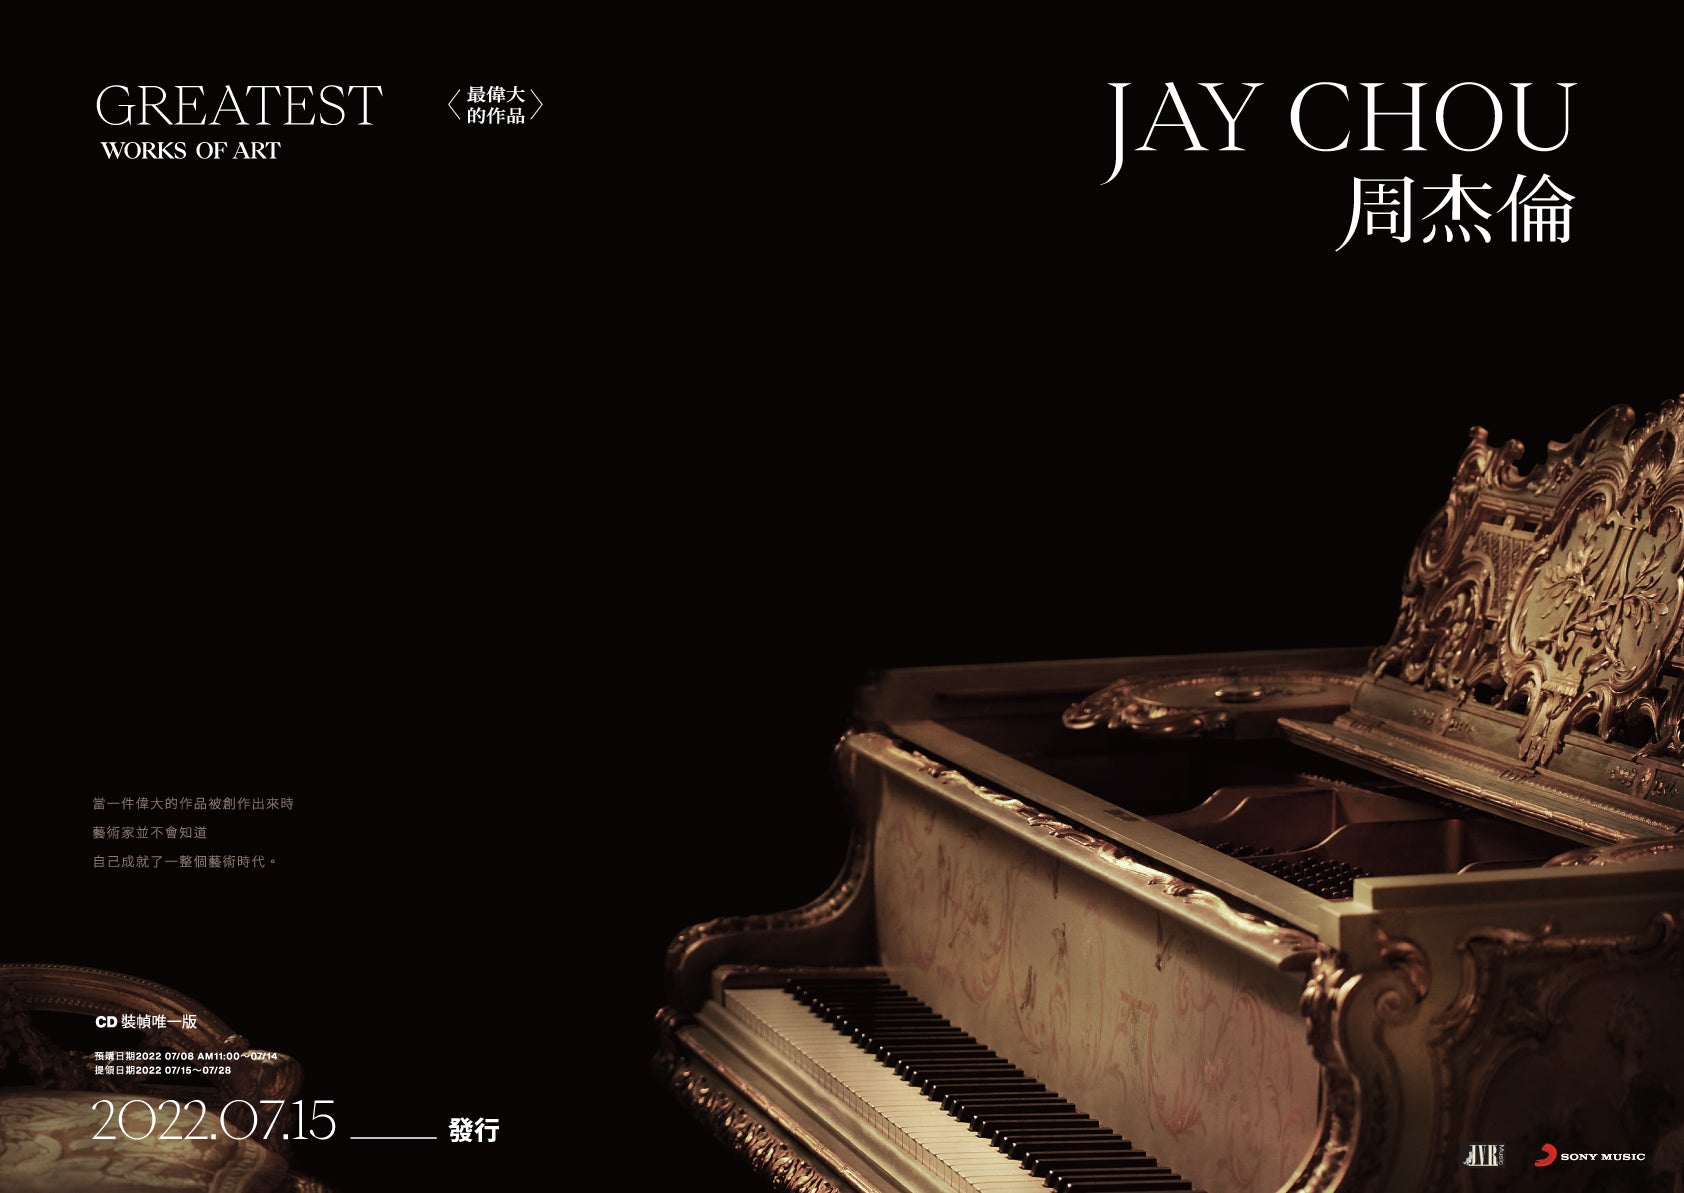 周杰倫JAY CHOU 最偉大の作品 台湾盤 最後の個人アルバム - K-POP・アジア